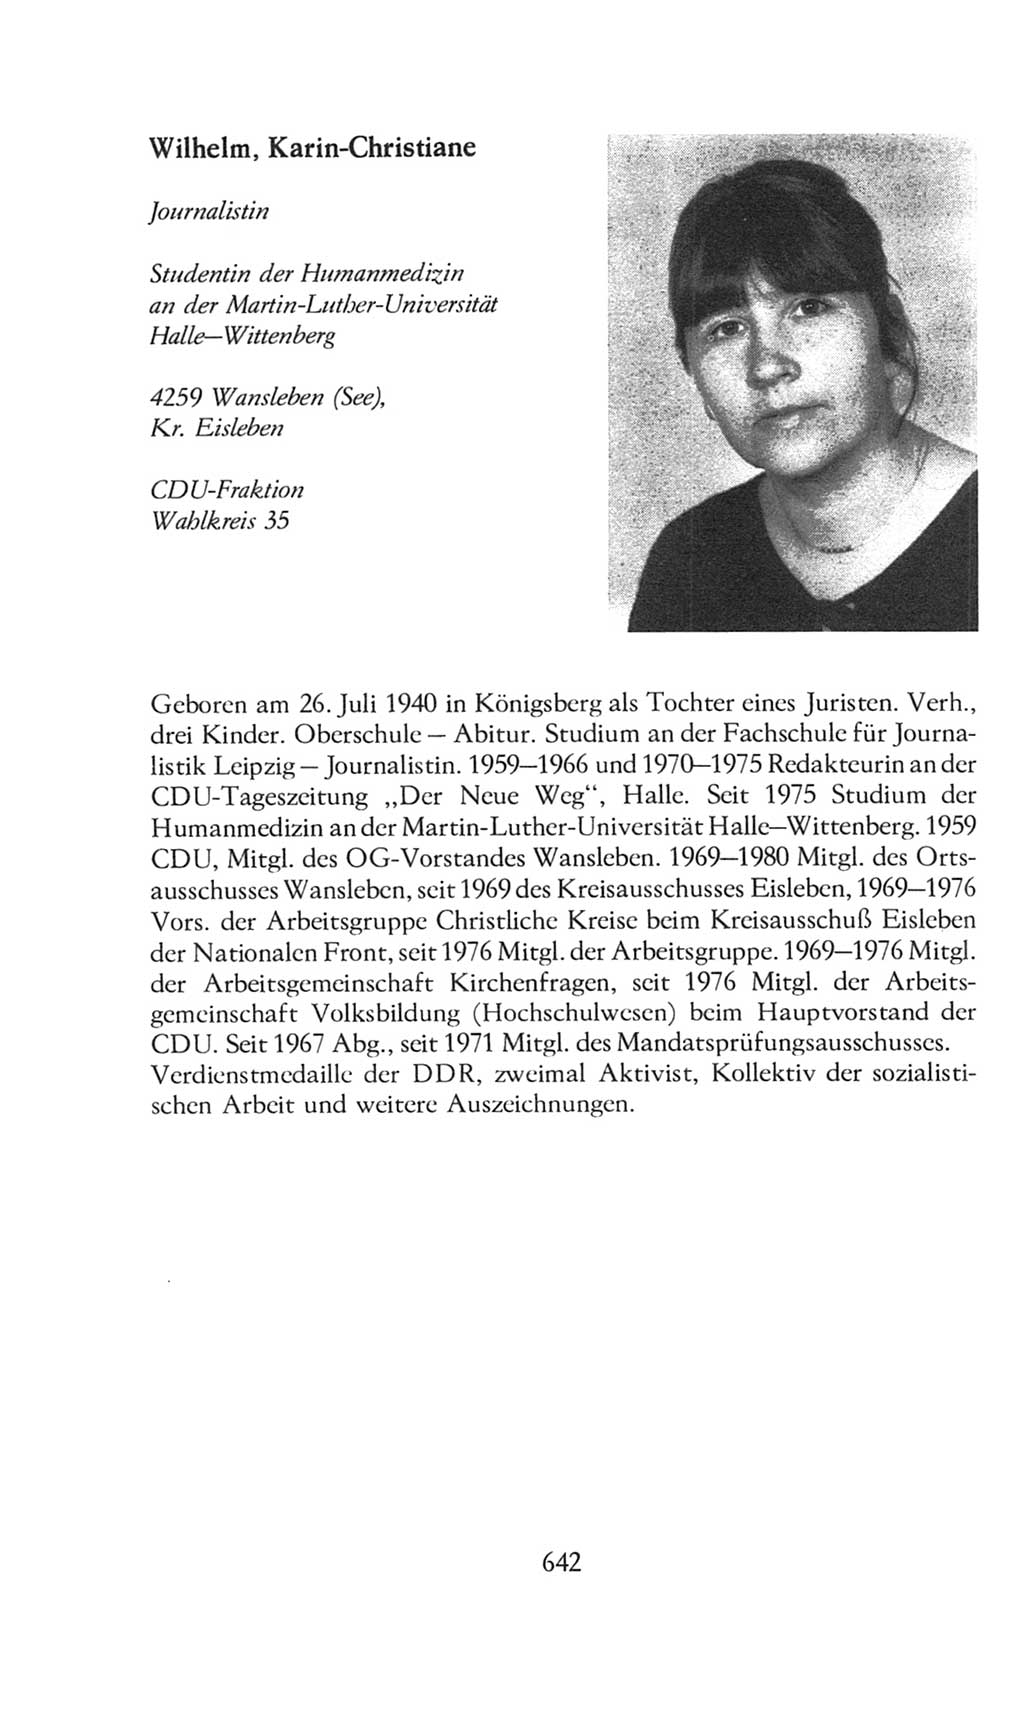 Volkskammer (VK) der Deutschen Demokratischen Republik (DDR), 8. Wahlperiode 1981-1986, Seite 642 (VK. DDR 8. WP. 1981-1986, S. 642)